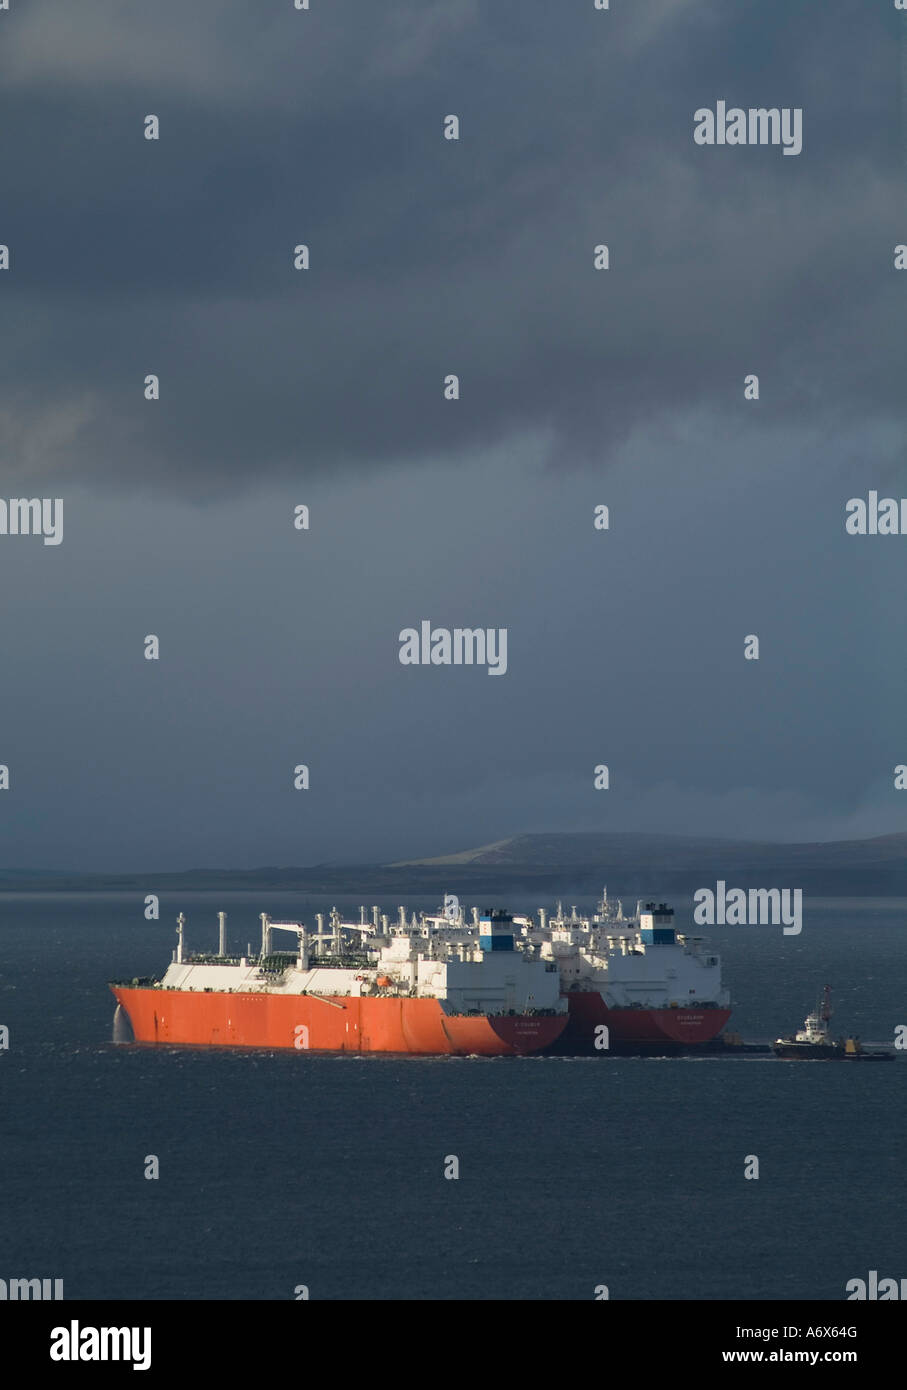 dh LNG-Tanker VERSCHIFFTEN UK Excelsior und Excalibur weltweit erste Schiffsübergabe von Flüssiggas-Scapa Flow-Öltankern Stockfoto